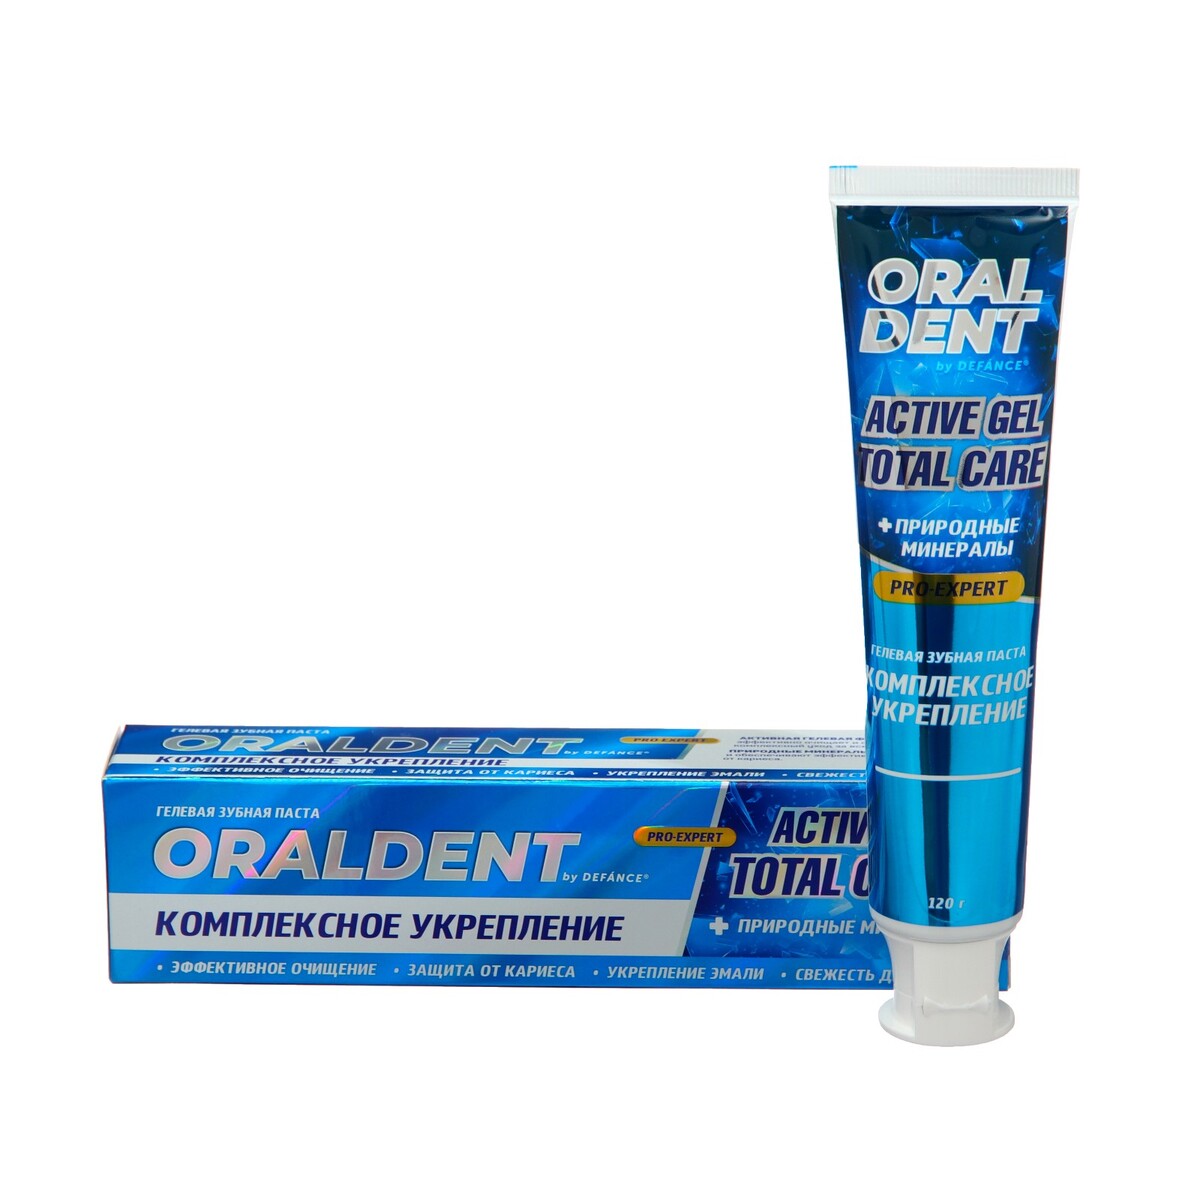 Зубная паста defance oraldent active gel, комплексный уход, 120 г колгейт паста зубная гранат уход и укрепл эмали 100мл